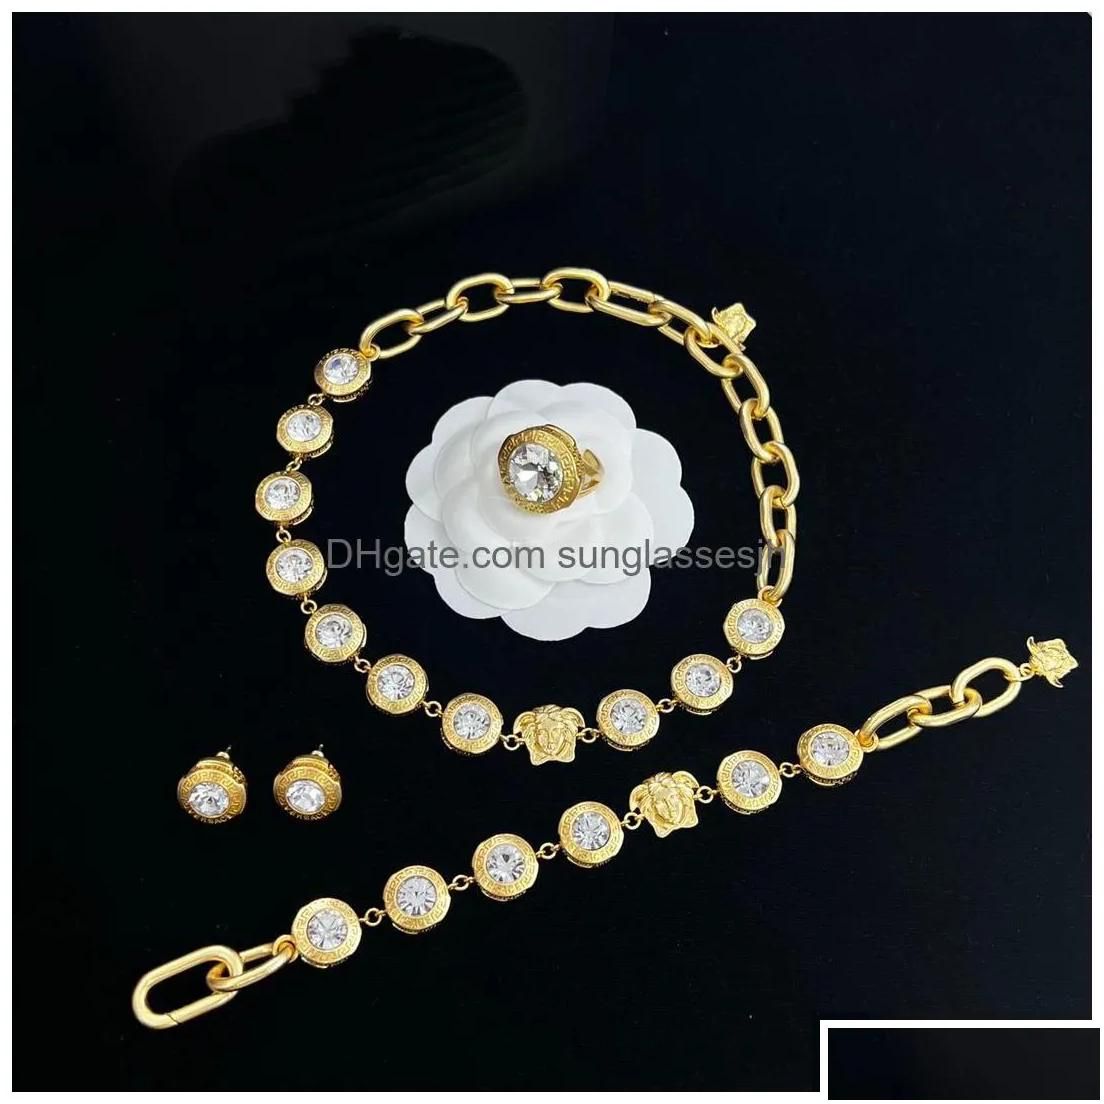 4pcs--145 collier bracelet boucle d'oreille anneau